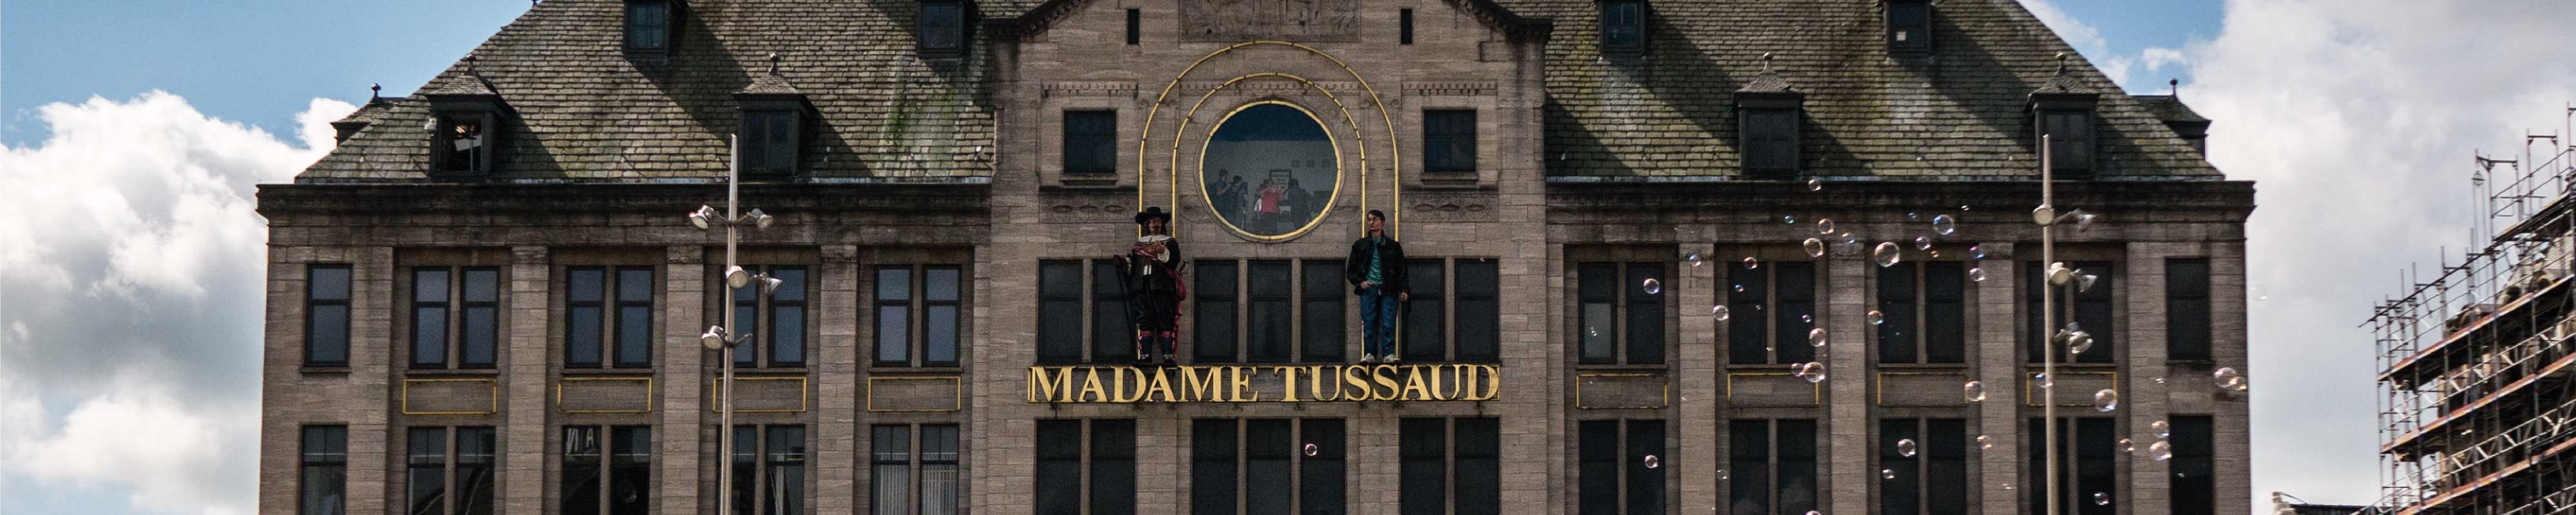 Gepäckaufbewahrung | Madame Tussauds Museum in London - Nannybag